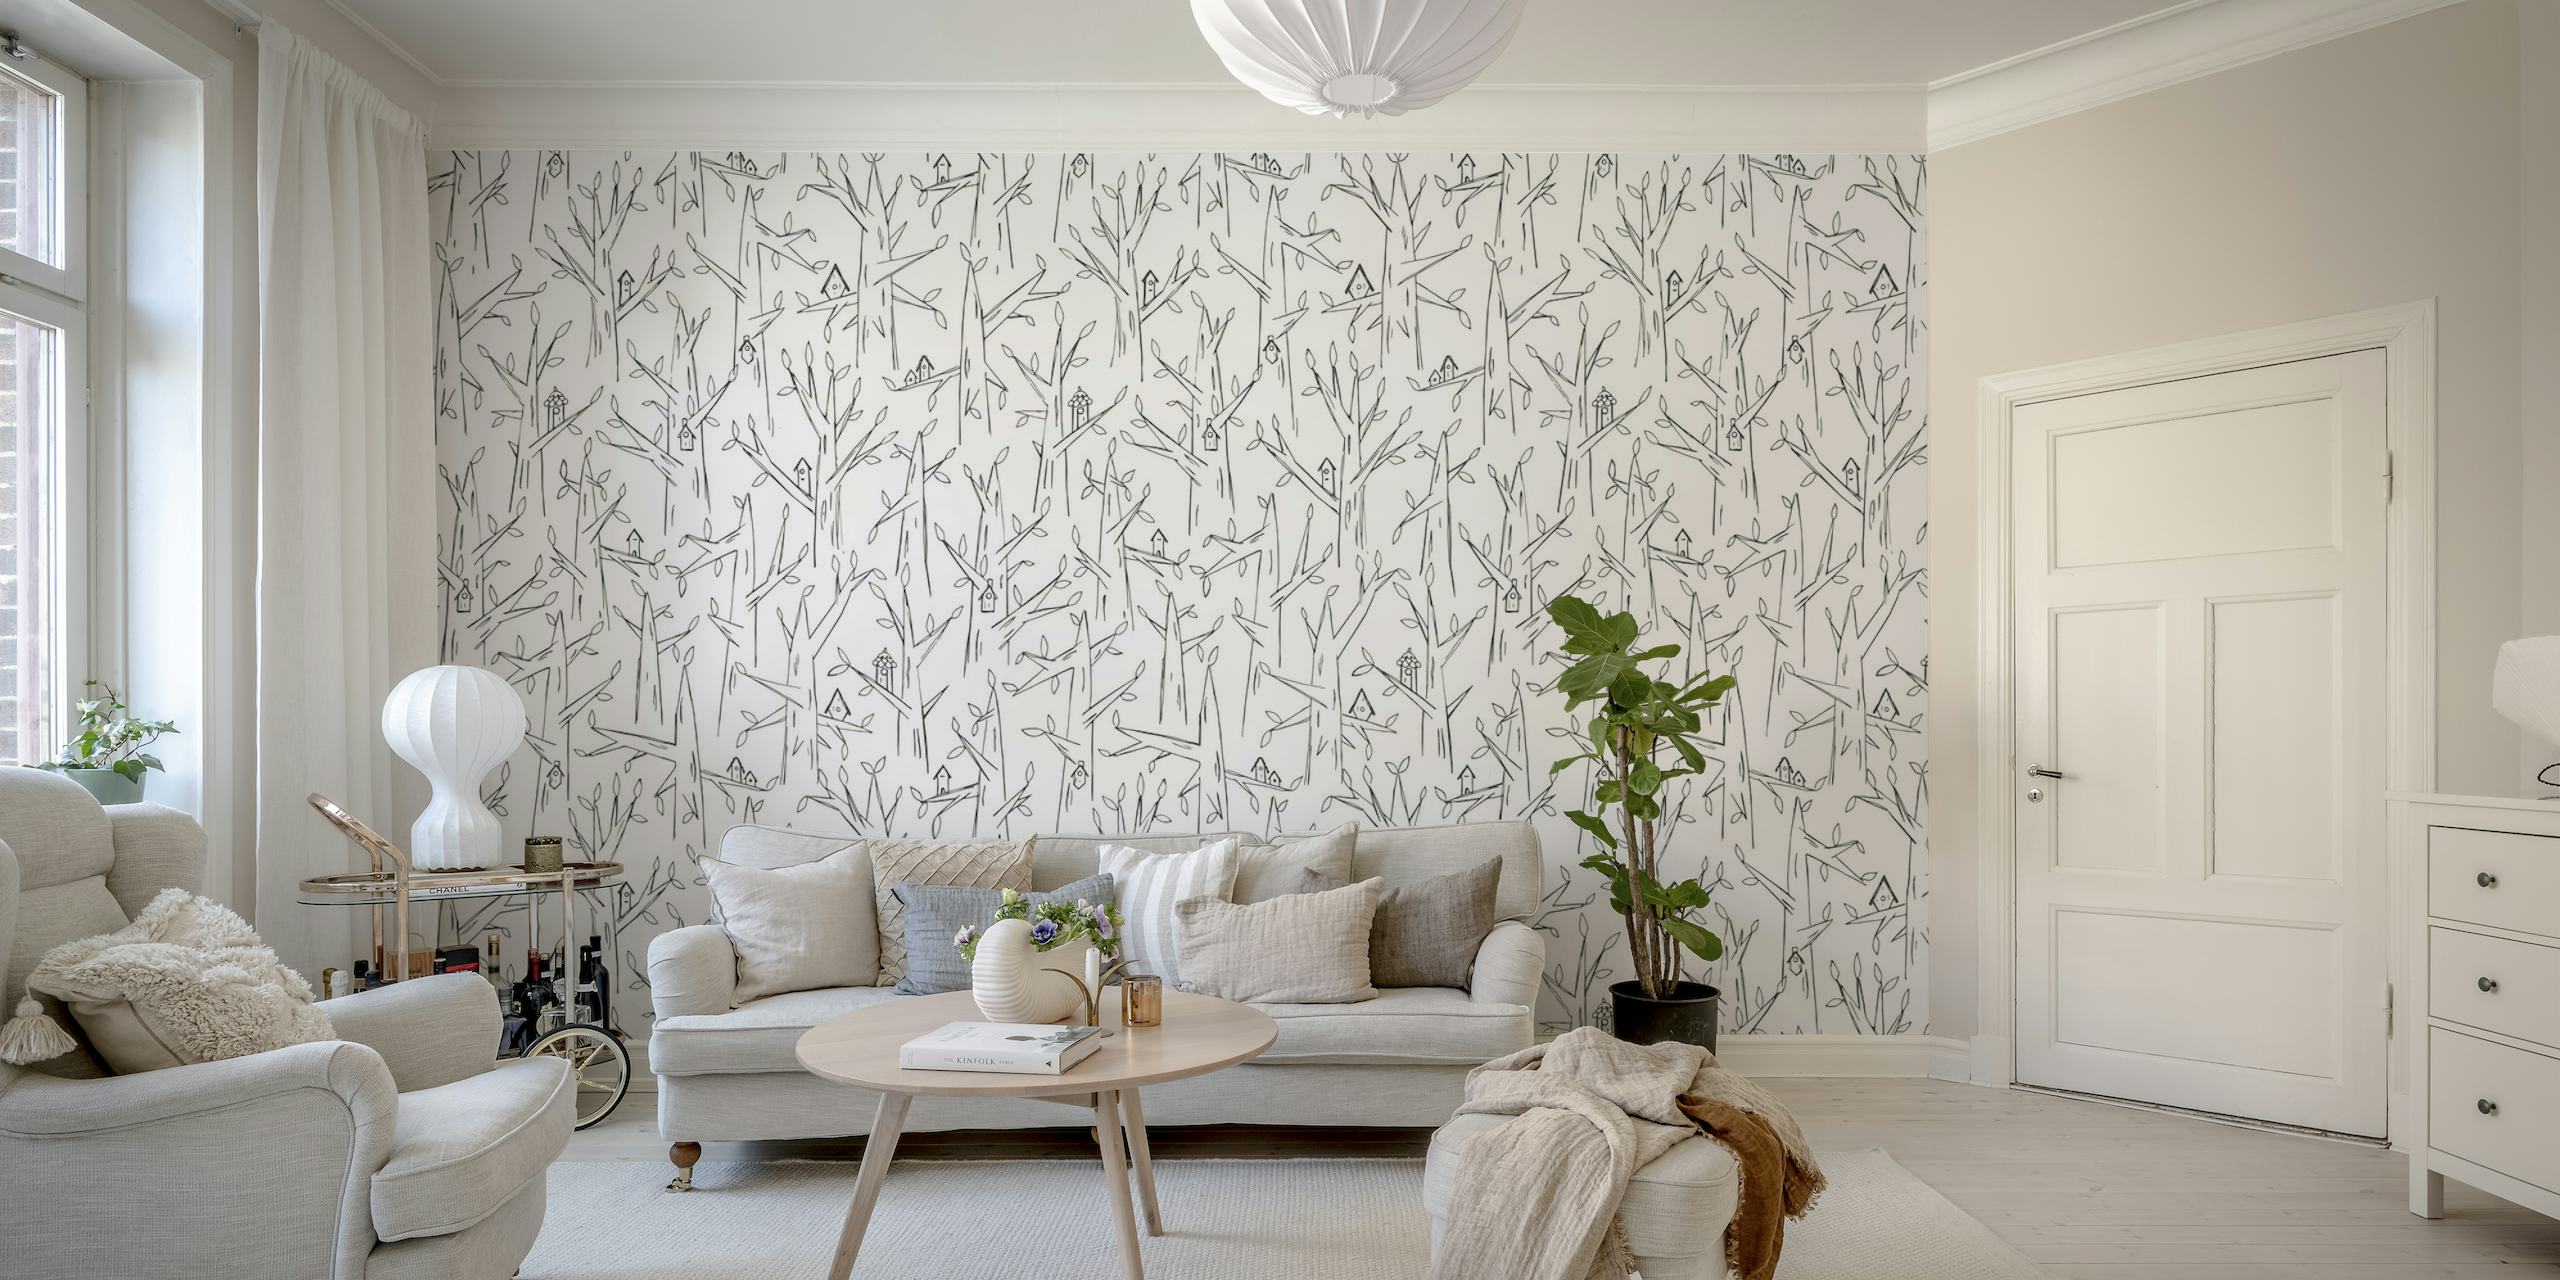 Birdhouses wallpaper